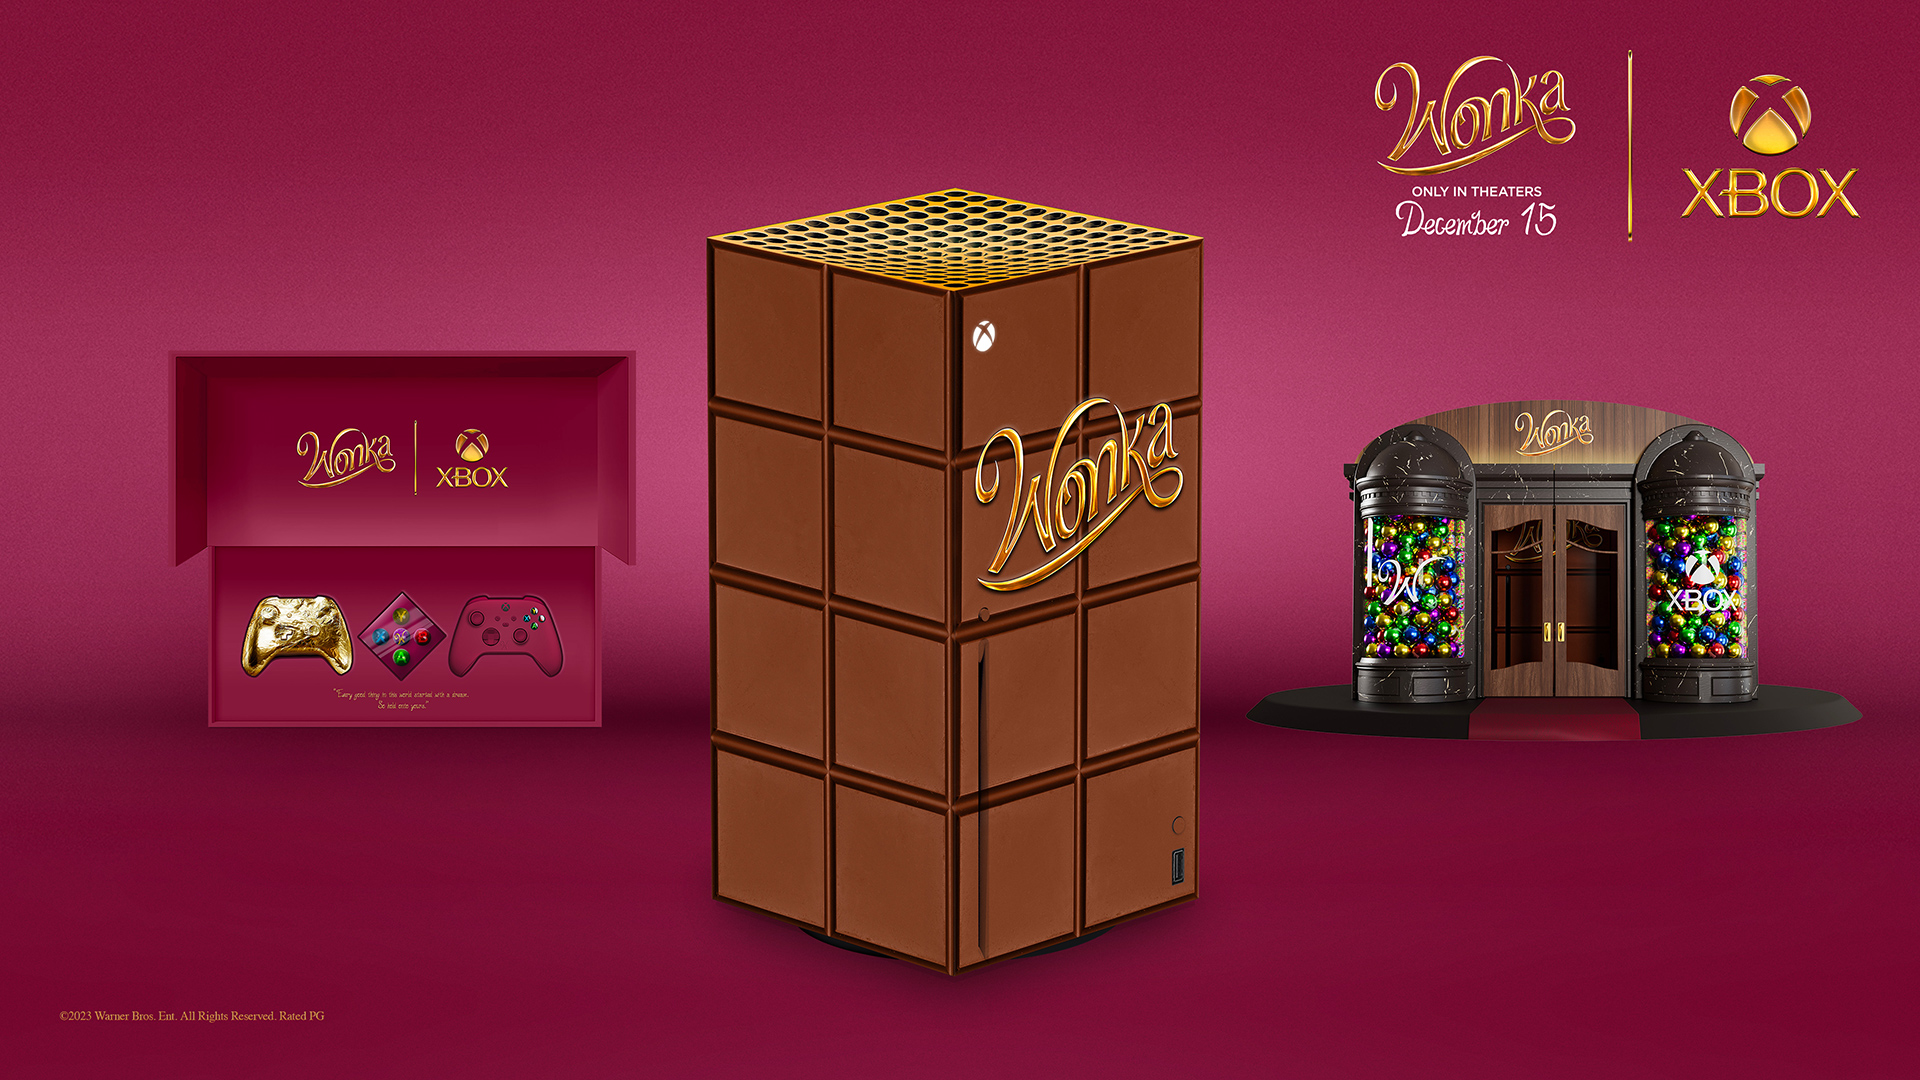 Aby uczcić nadchodzącą premierę filmu Wonka, Xbox ogłosił partnerstwo z Warner Bros. i rozdaje serię X o tematyce czekoladowej z gamepadem